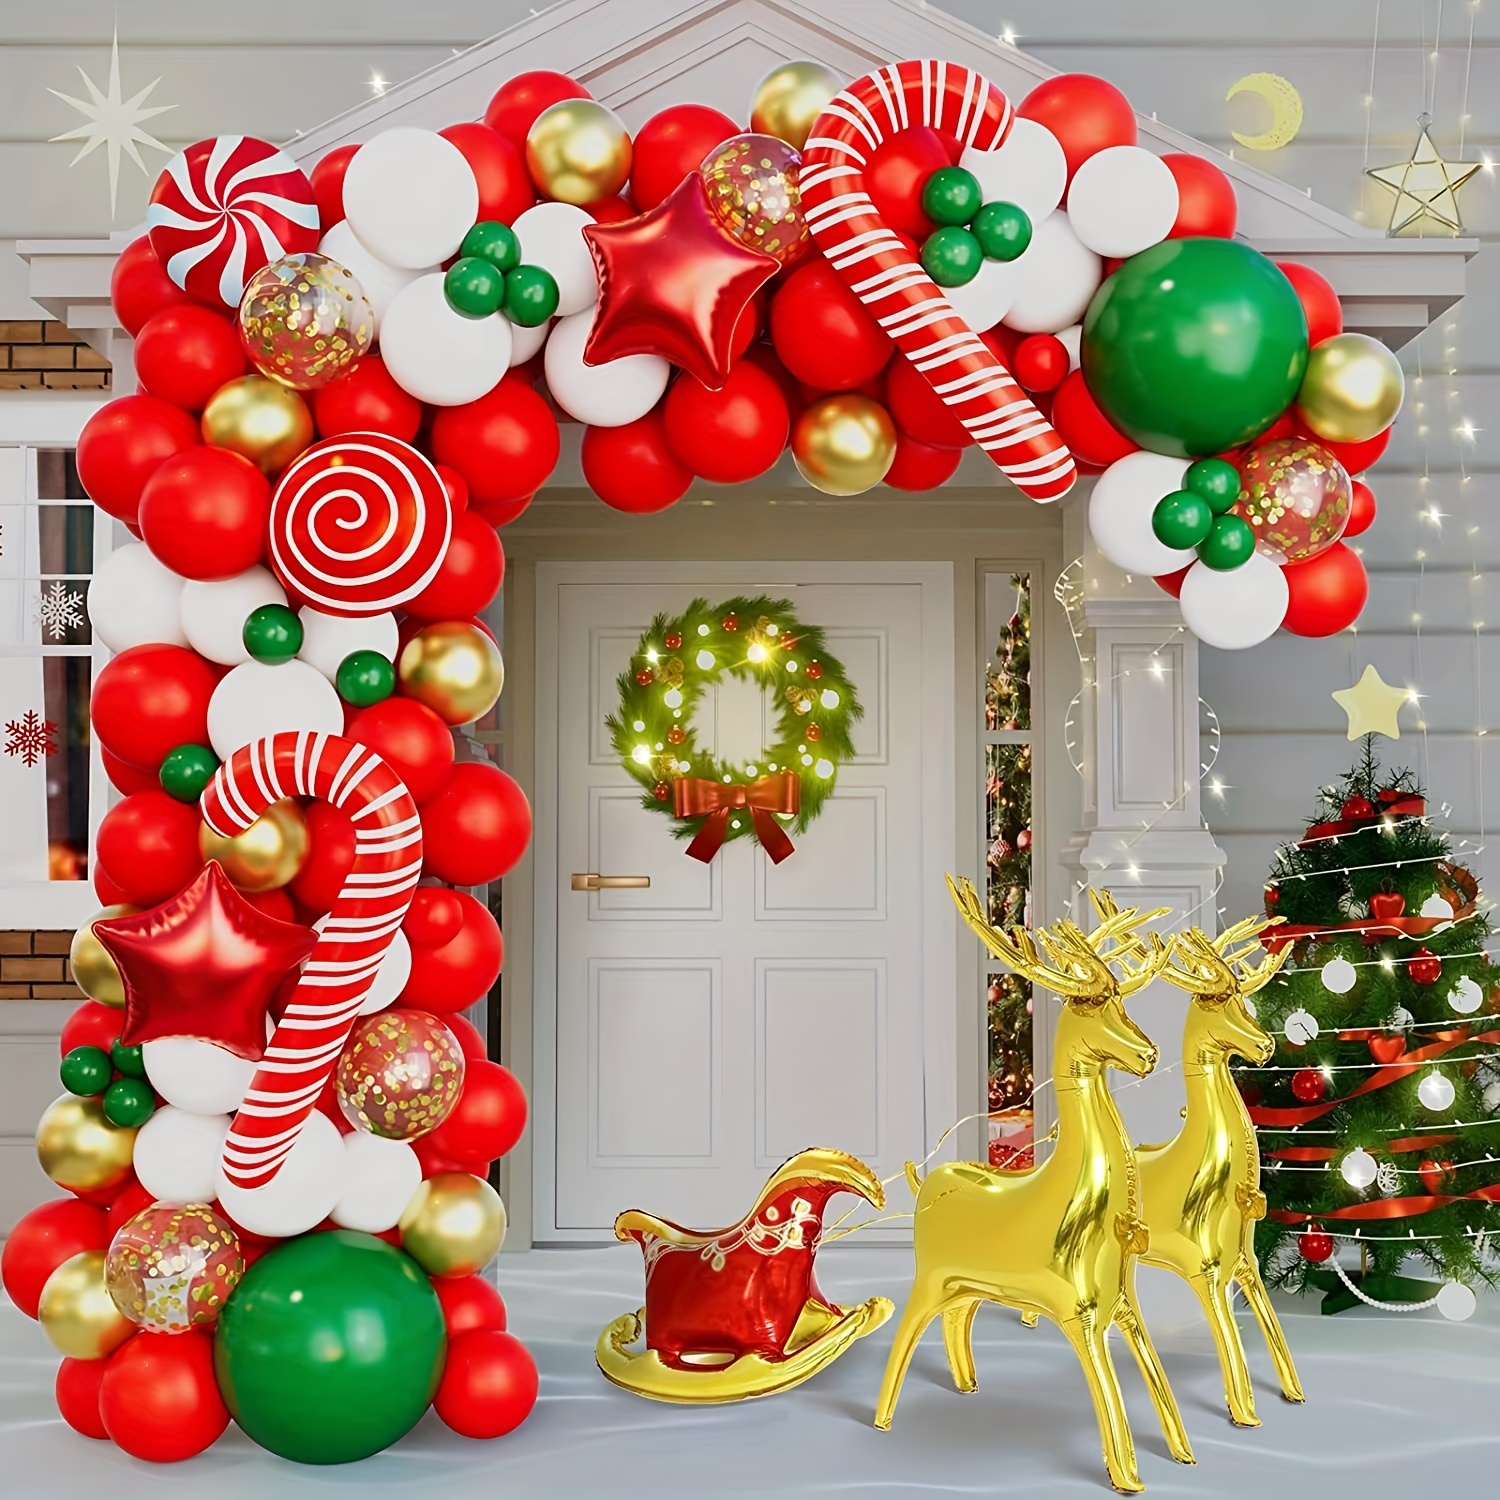 🌲🌲Deco Navidad🎈🎈 🥳Los globos son la magia de los cumpleaños🎈🎈🎈 Semi  arco en tonos navideños🎈🎈 #Navidad#arco#globos#cumpleaños#